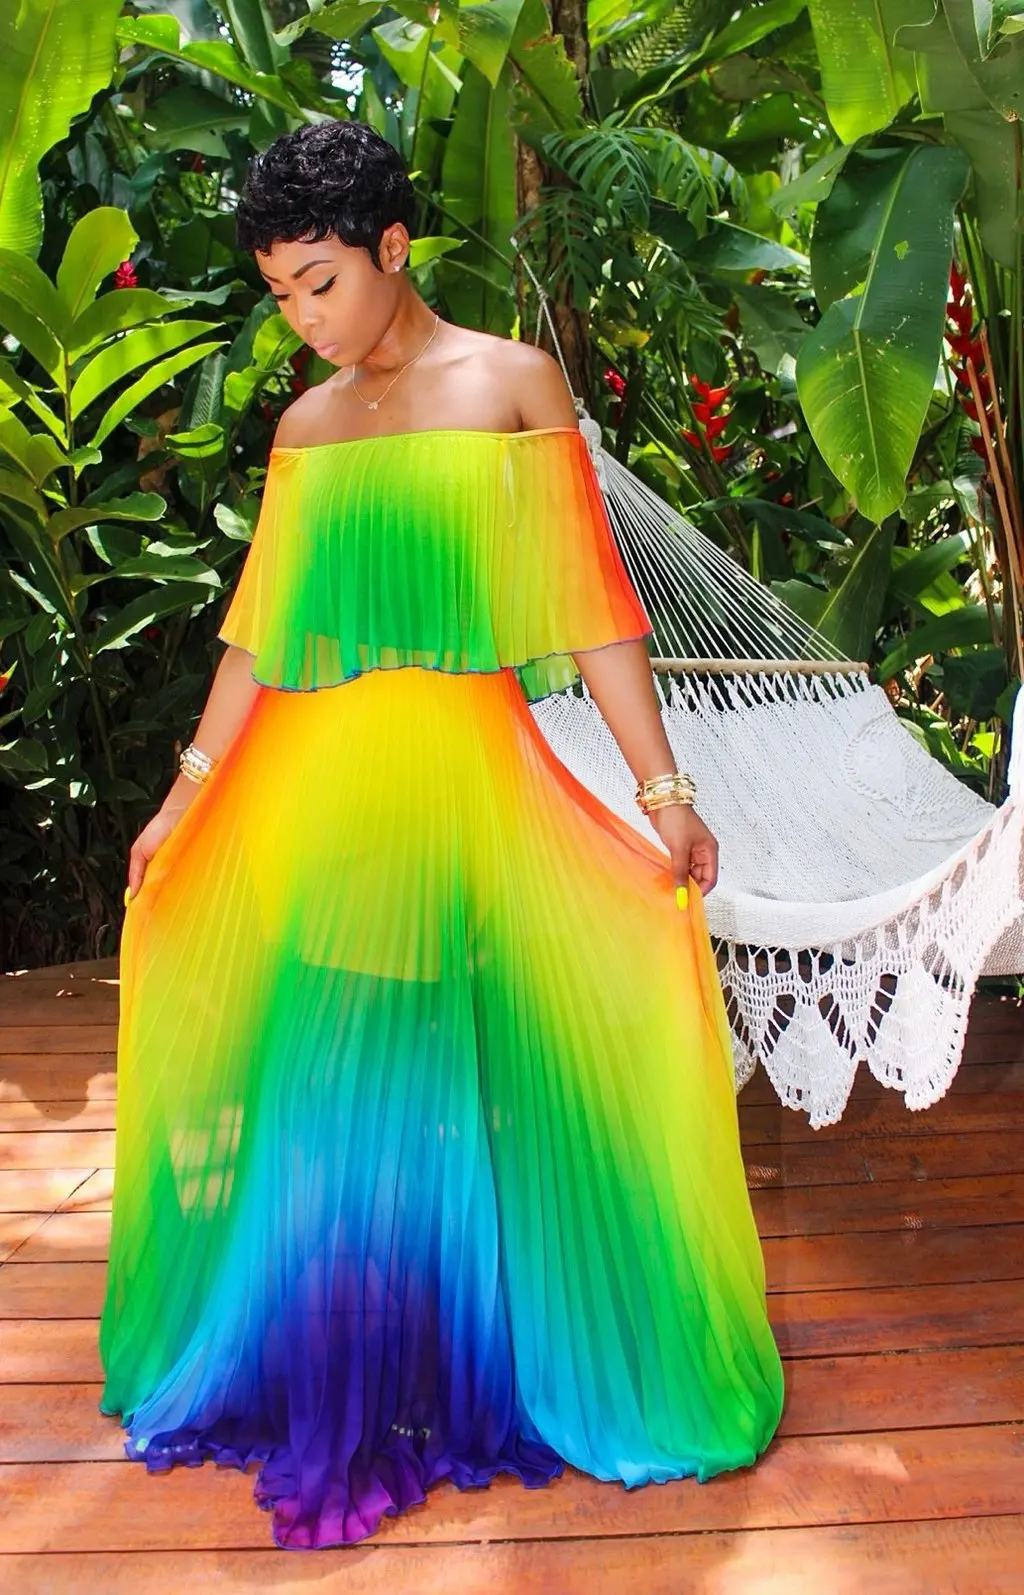 Стиль африканская женская одежда Дашики модный принт эластичная ткань с длинными рукавами платье супер